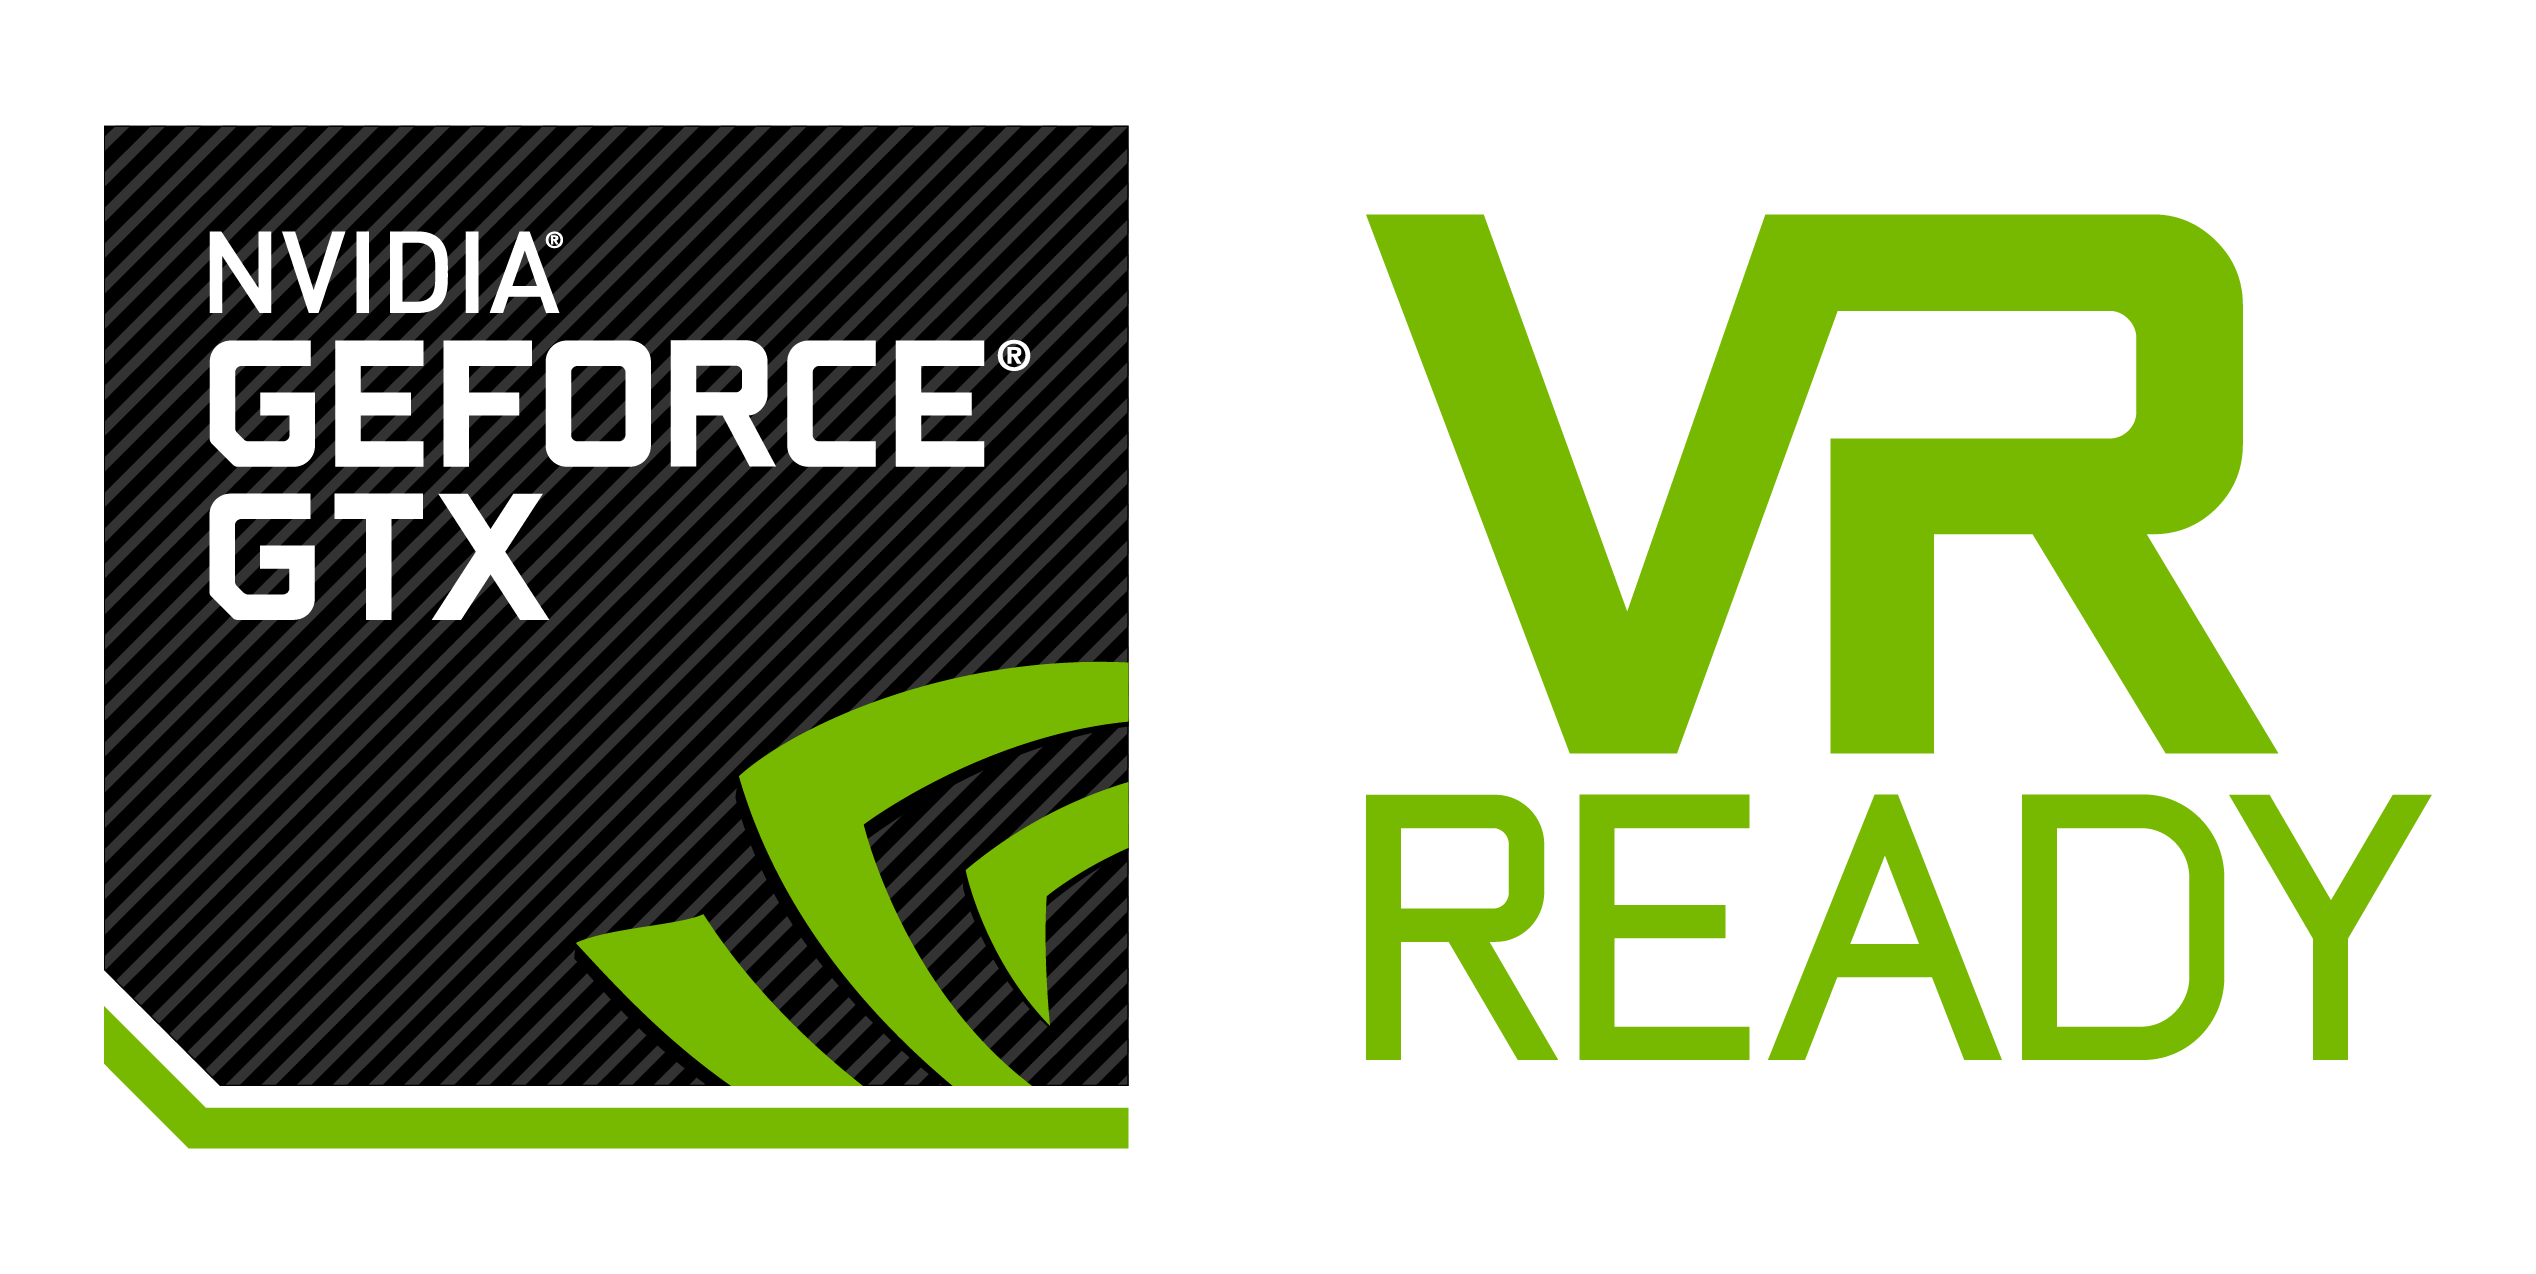 NVIDIA GeForce Logo - MSI VR Ready | MSI Global